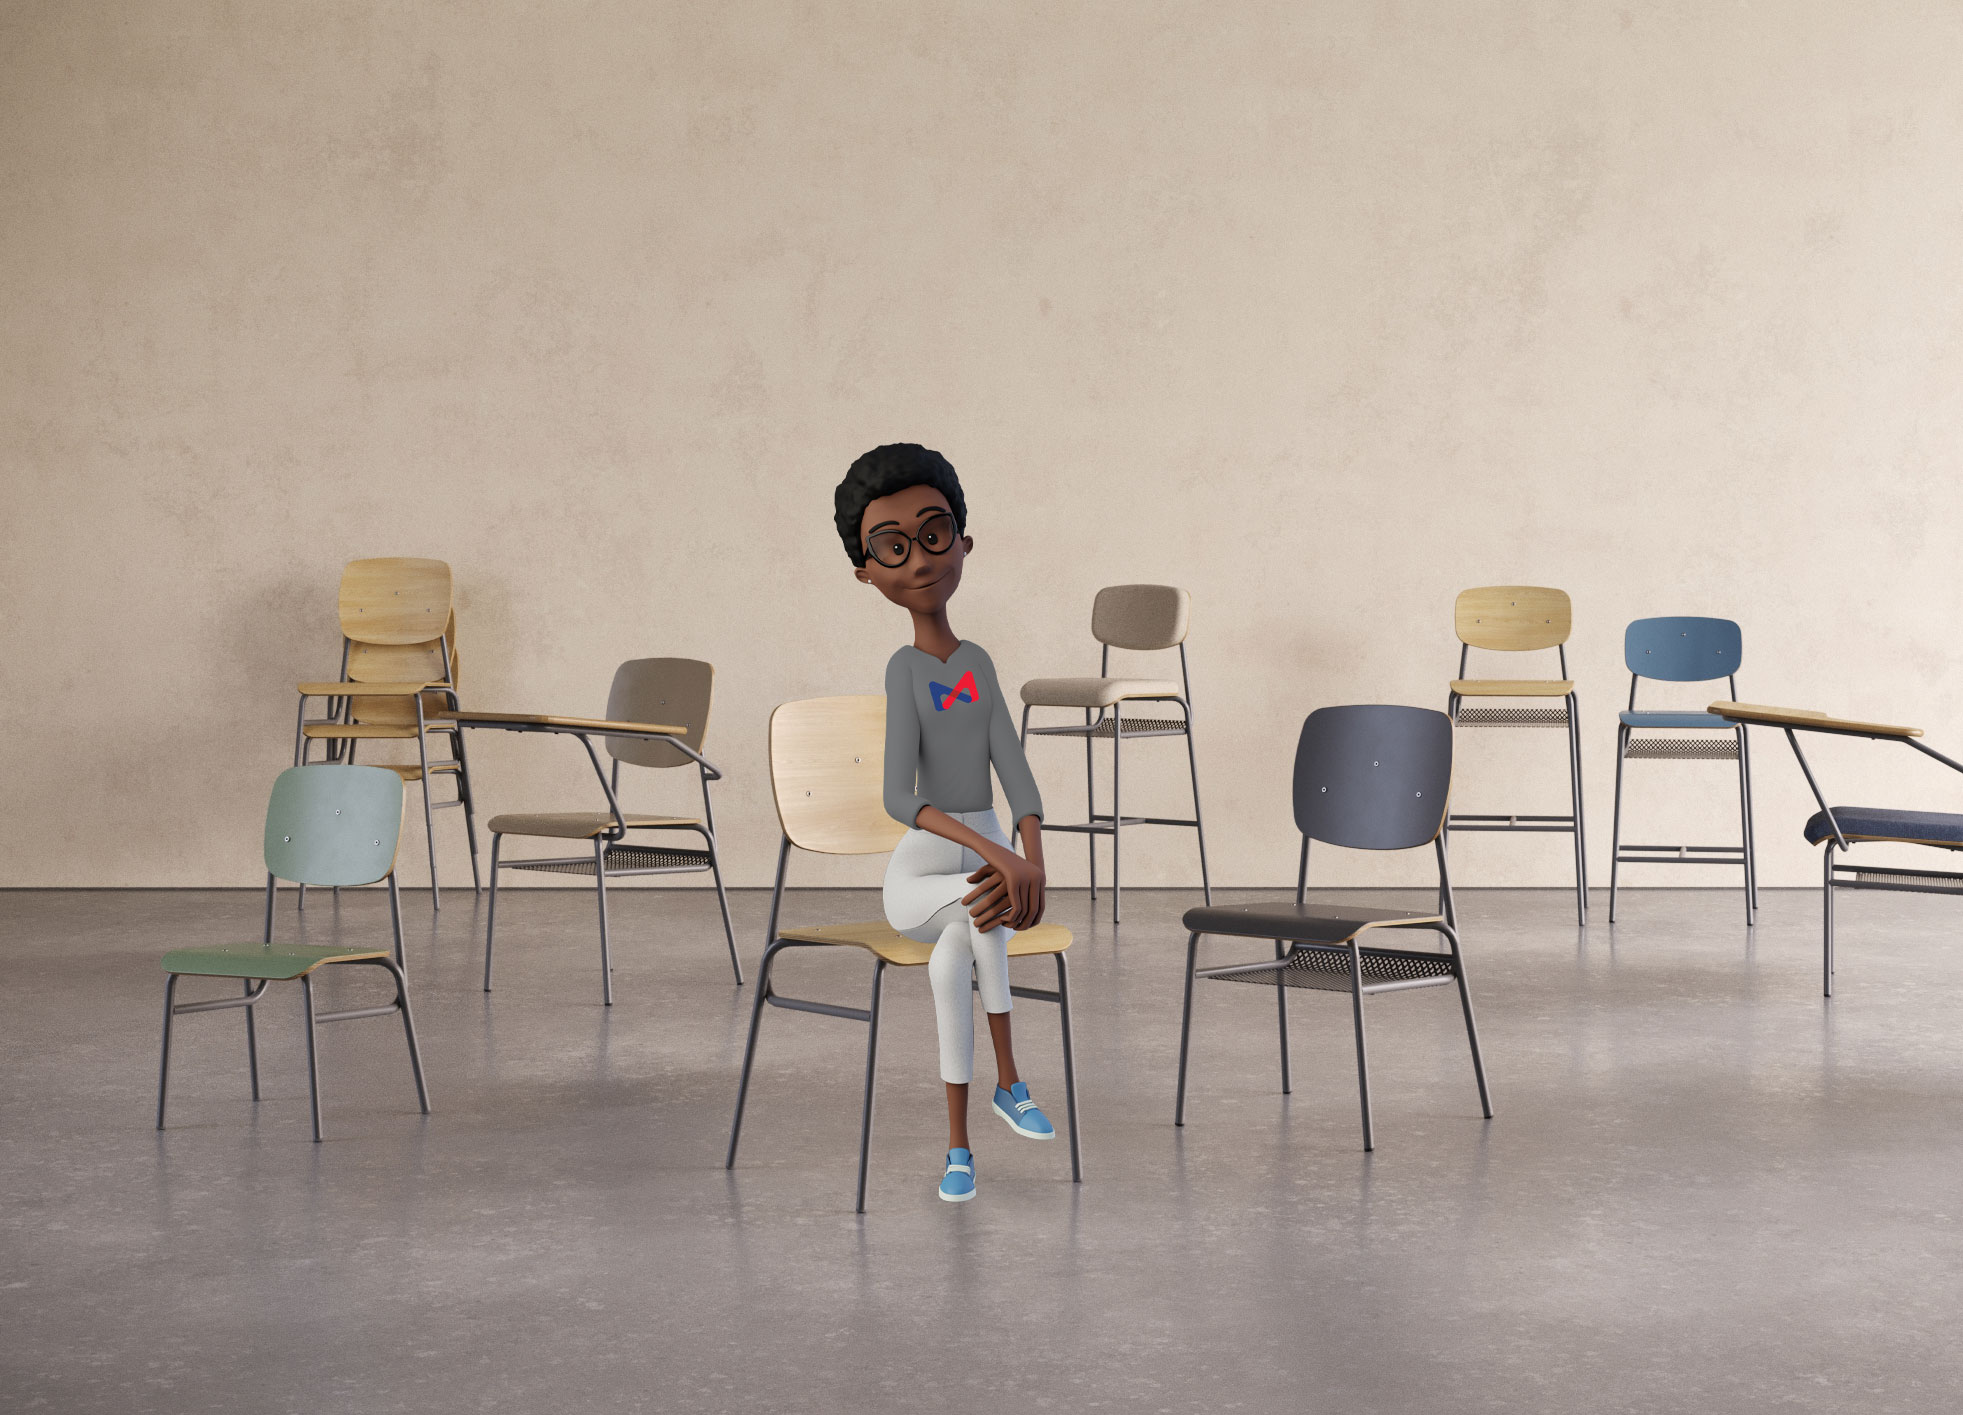 ambiente amplo com cadeiras de diversas cores com personagem sentada de pernas cruzadas